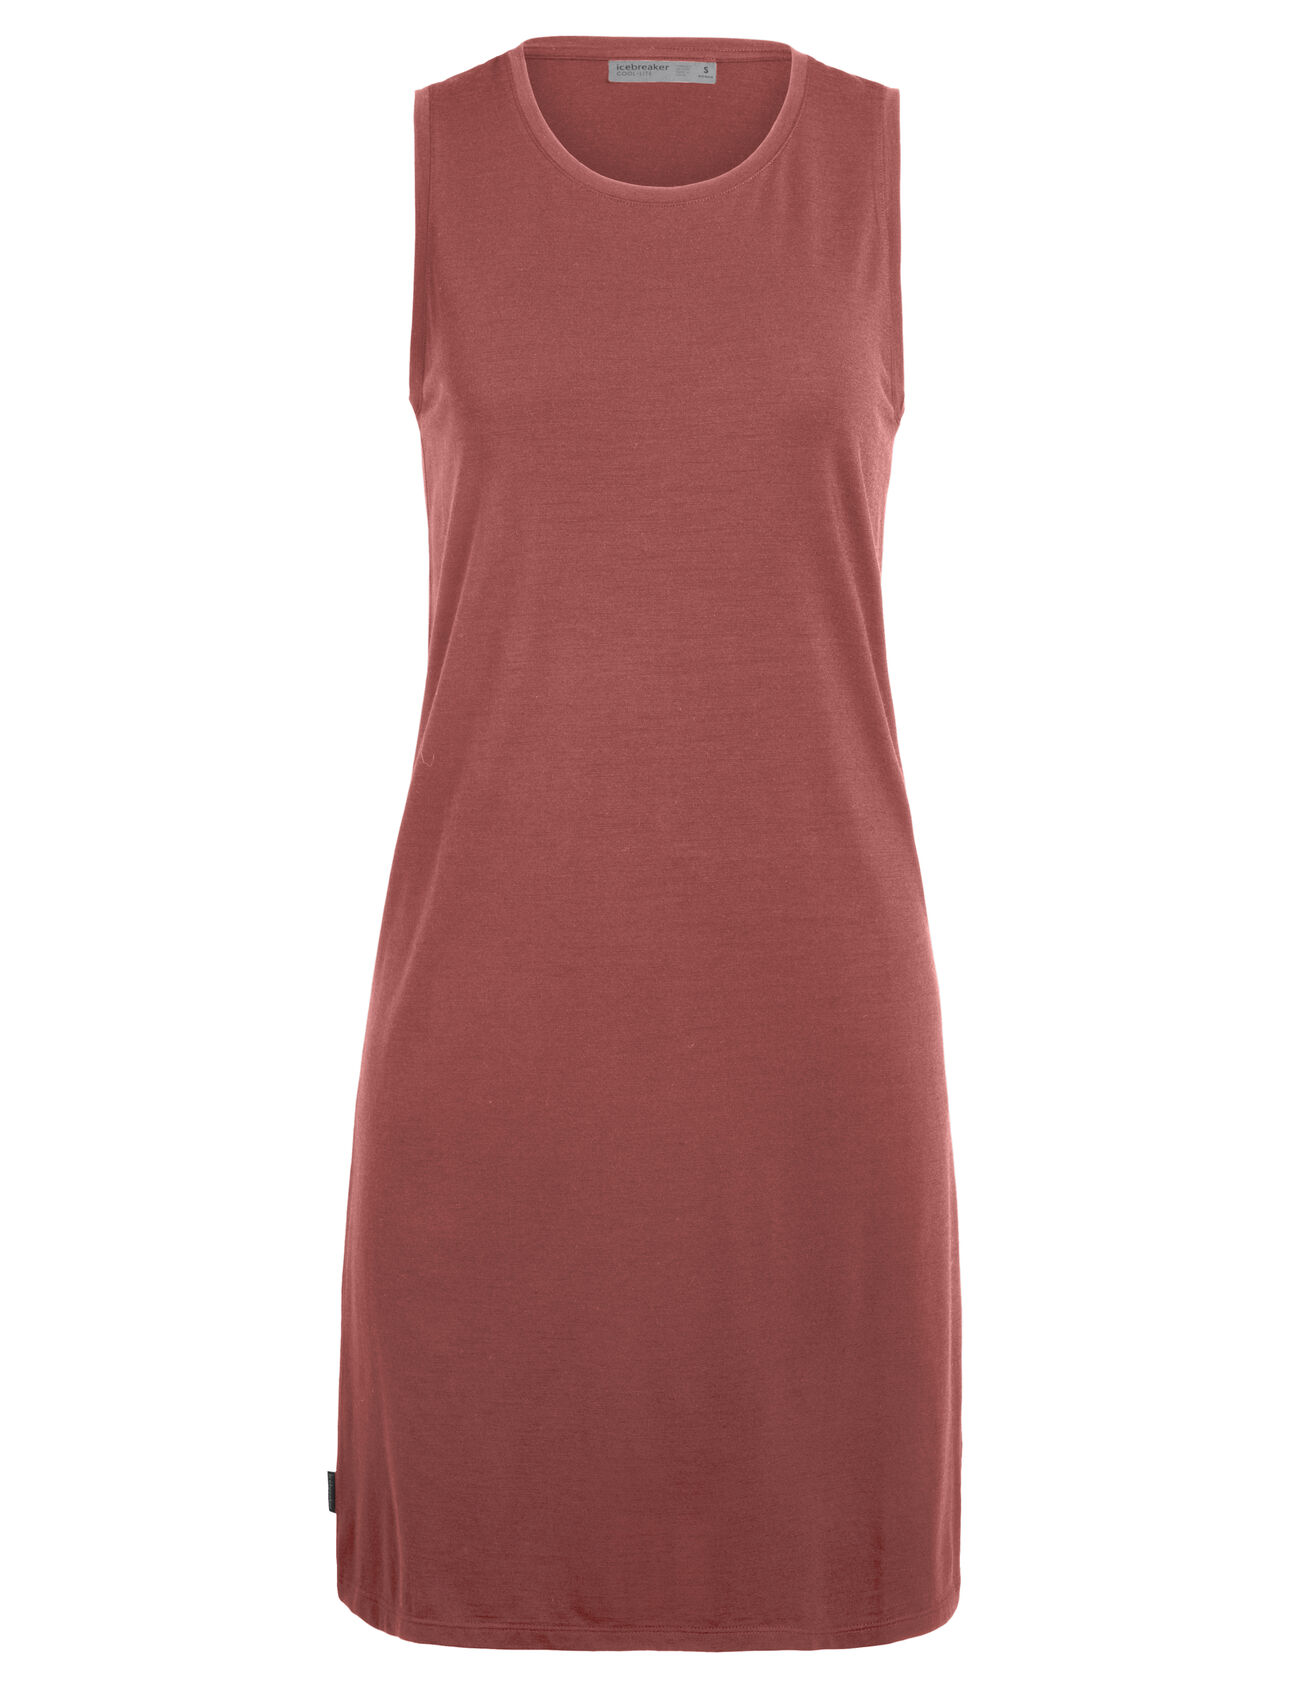 Dam Cool-Lite™ Yanni ärmlös klänning i merino Yanni Sleeveless Dress är en lätt och stretchig damklänning som tillverkas i cool-lite™-merinojersey för mjuk komfort och hållbarhet med avslappnad passform och urringning.